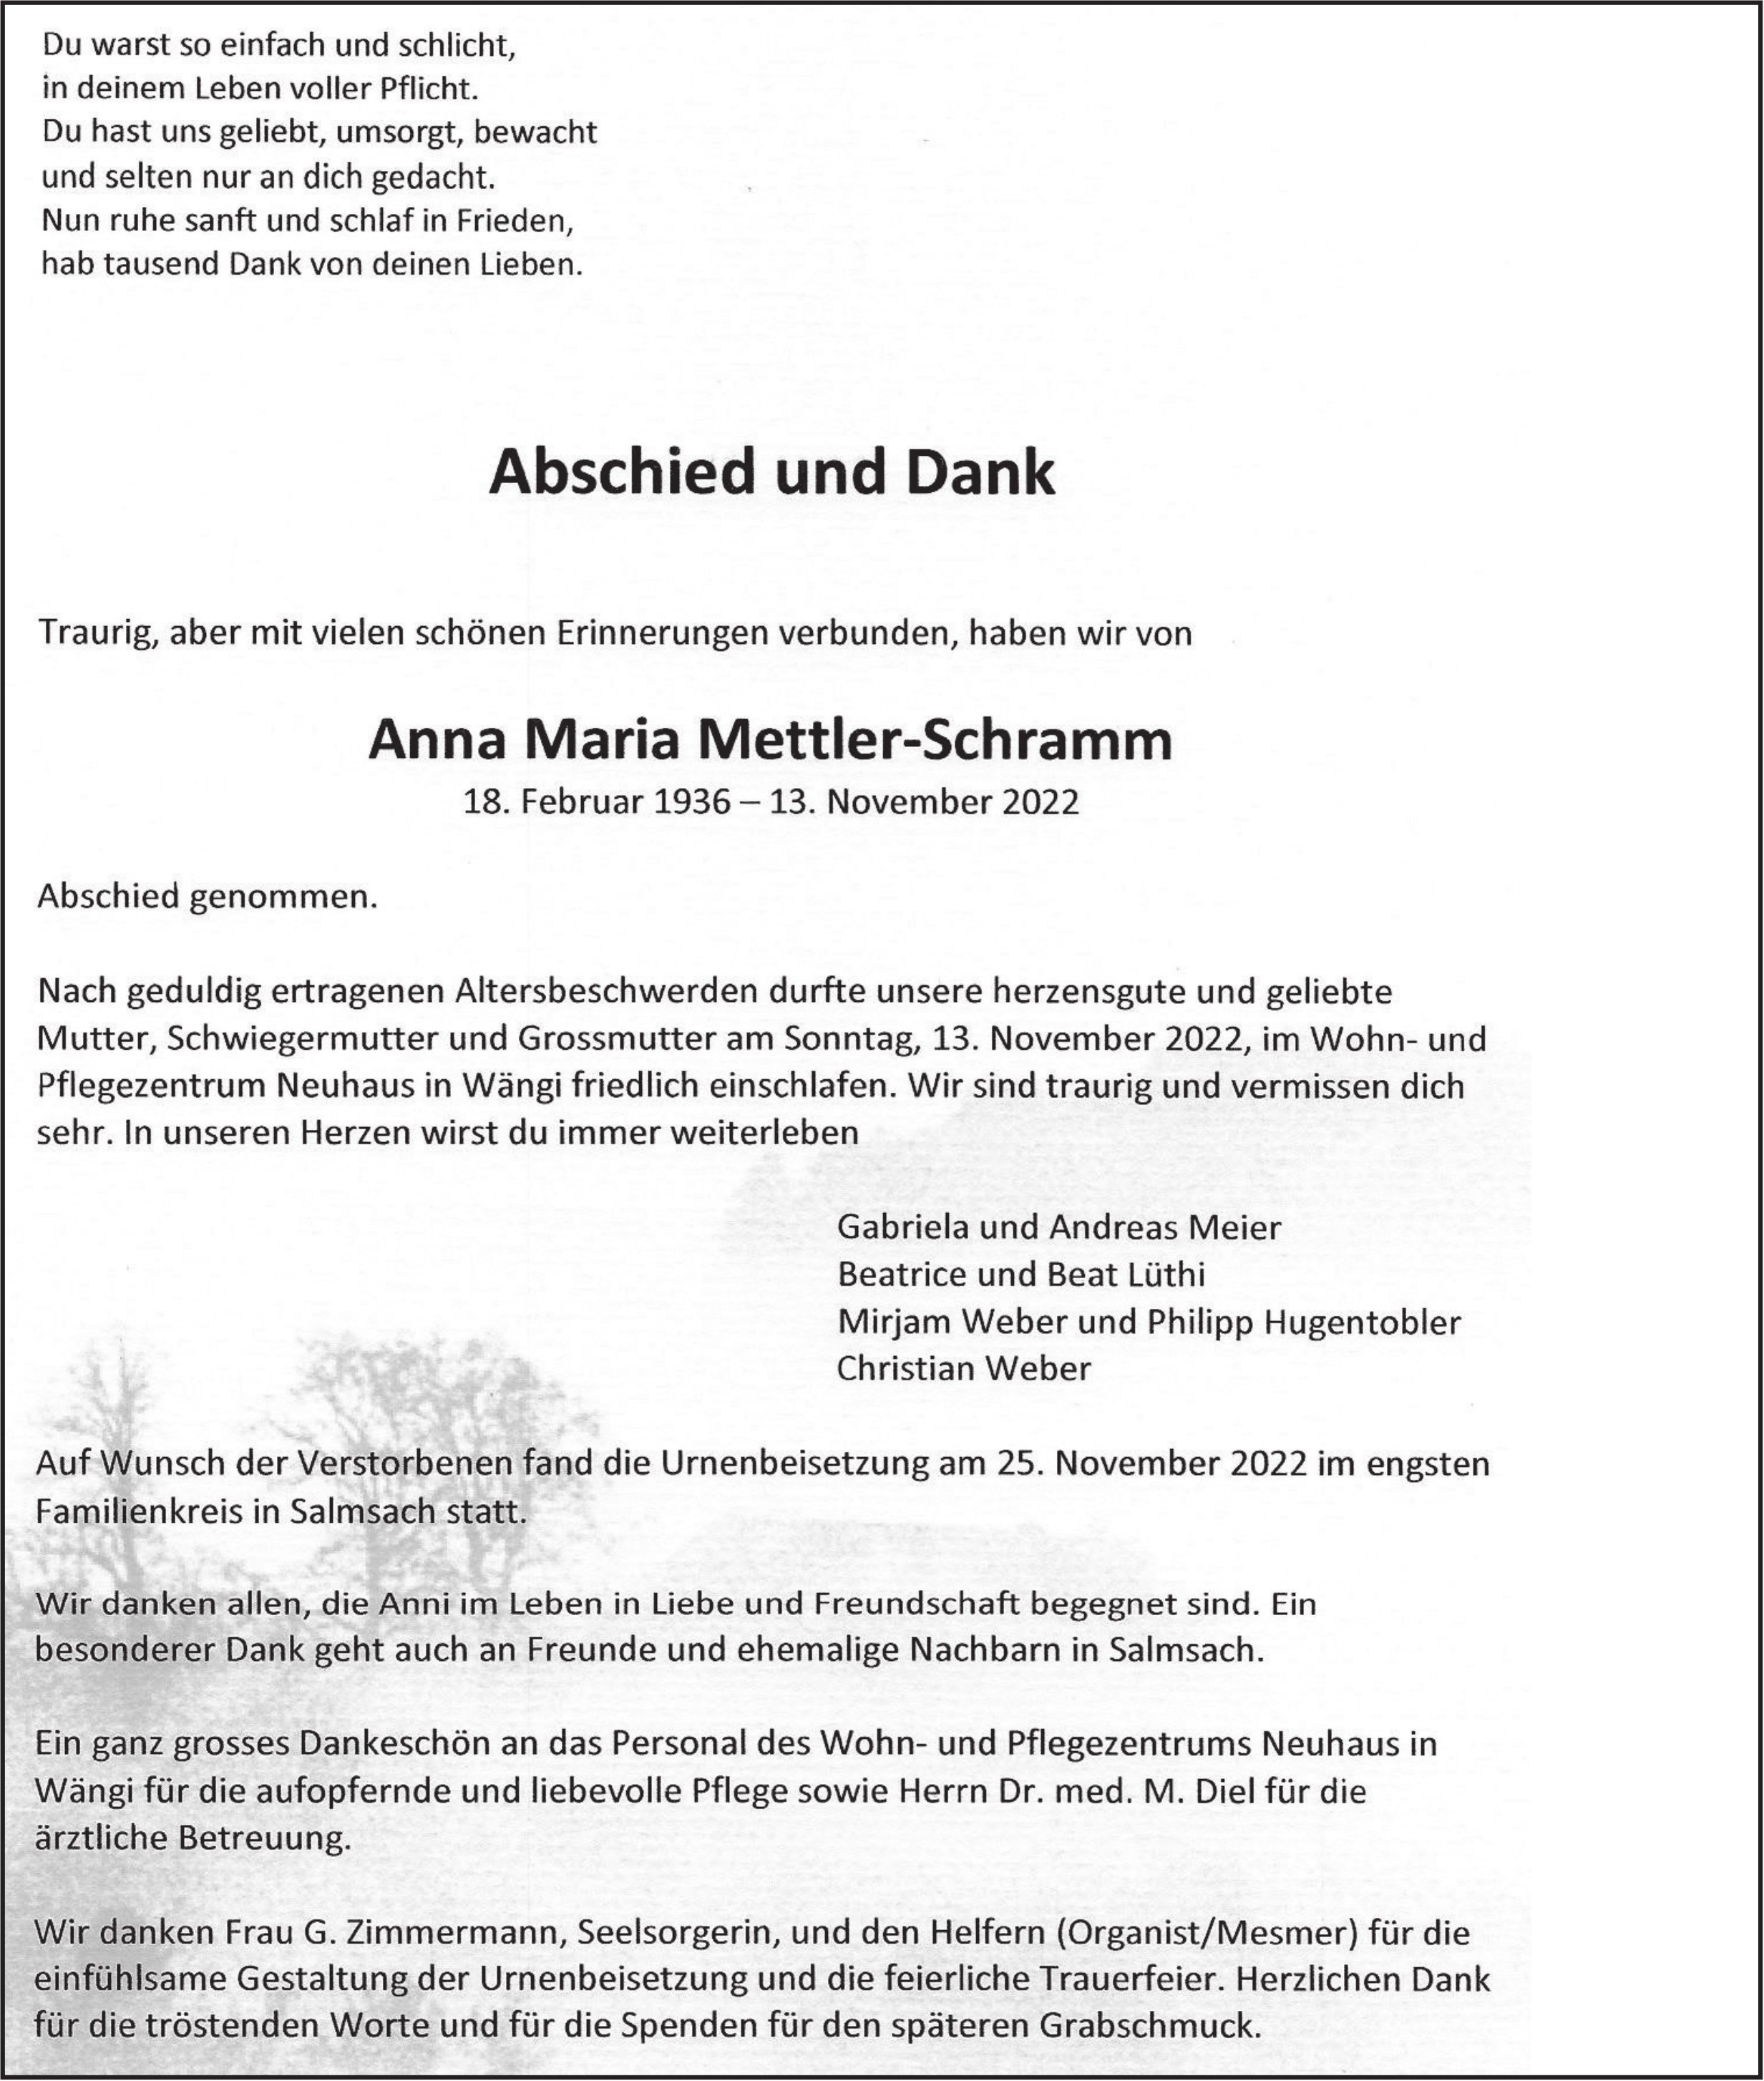 Anna Maria Mettler-Schramm, November 2022 / TA